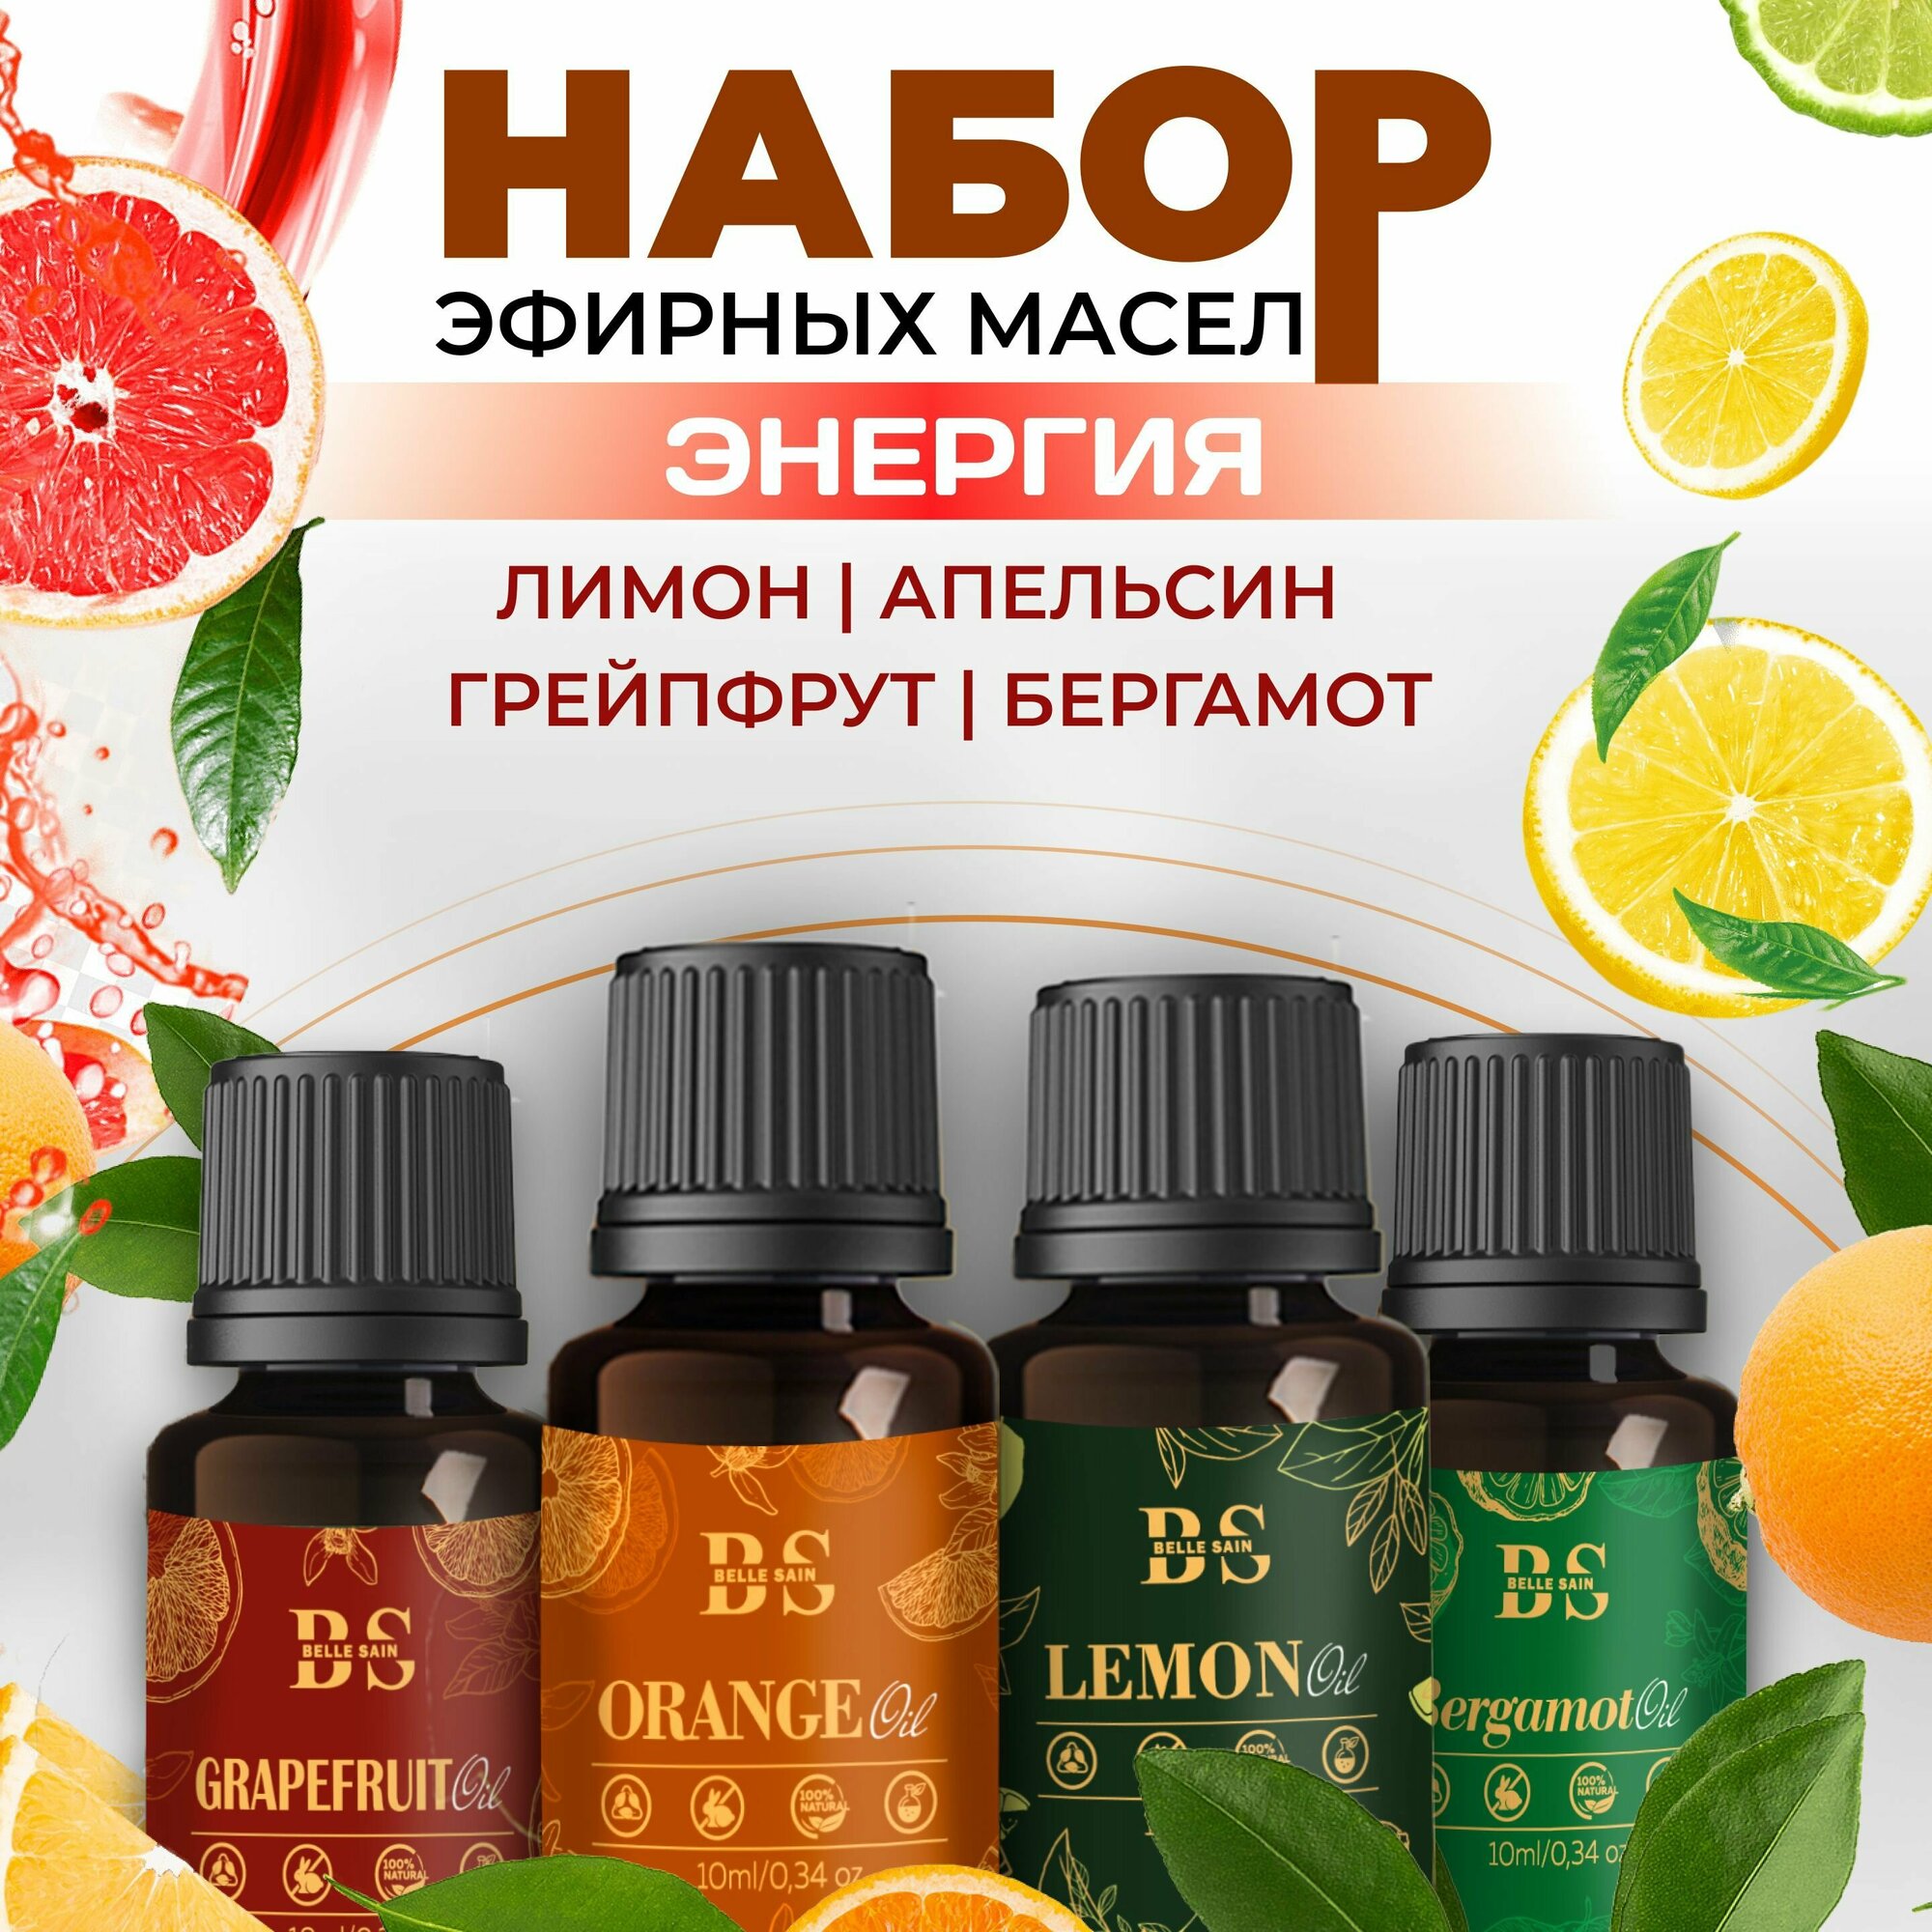 Бодрящее эфирное масло для бани и сауны 40 мл. ( Набор натуральных эфирных масел апельсина лимона грйпфрута бергамота)